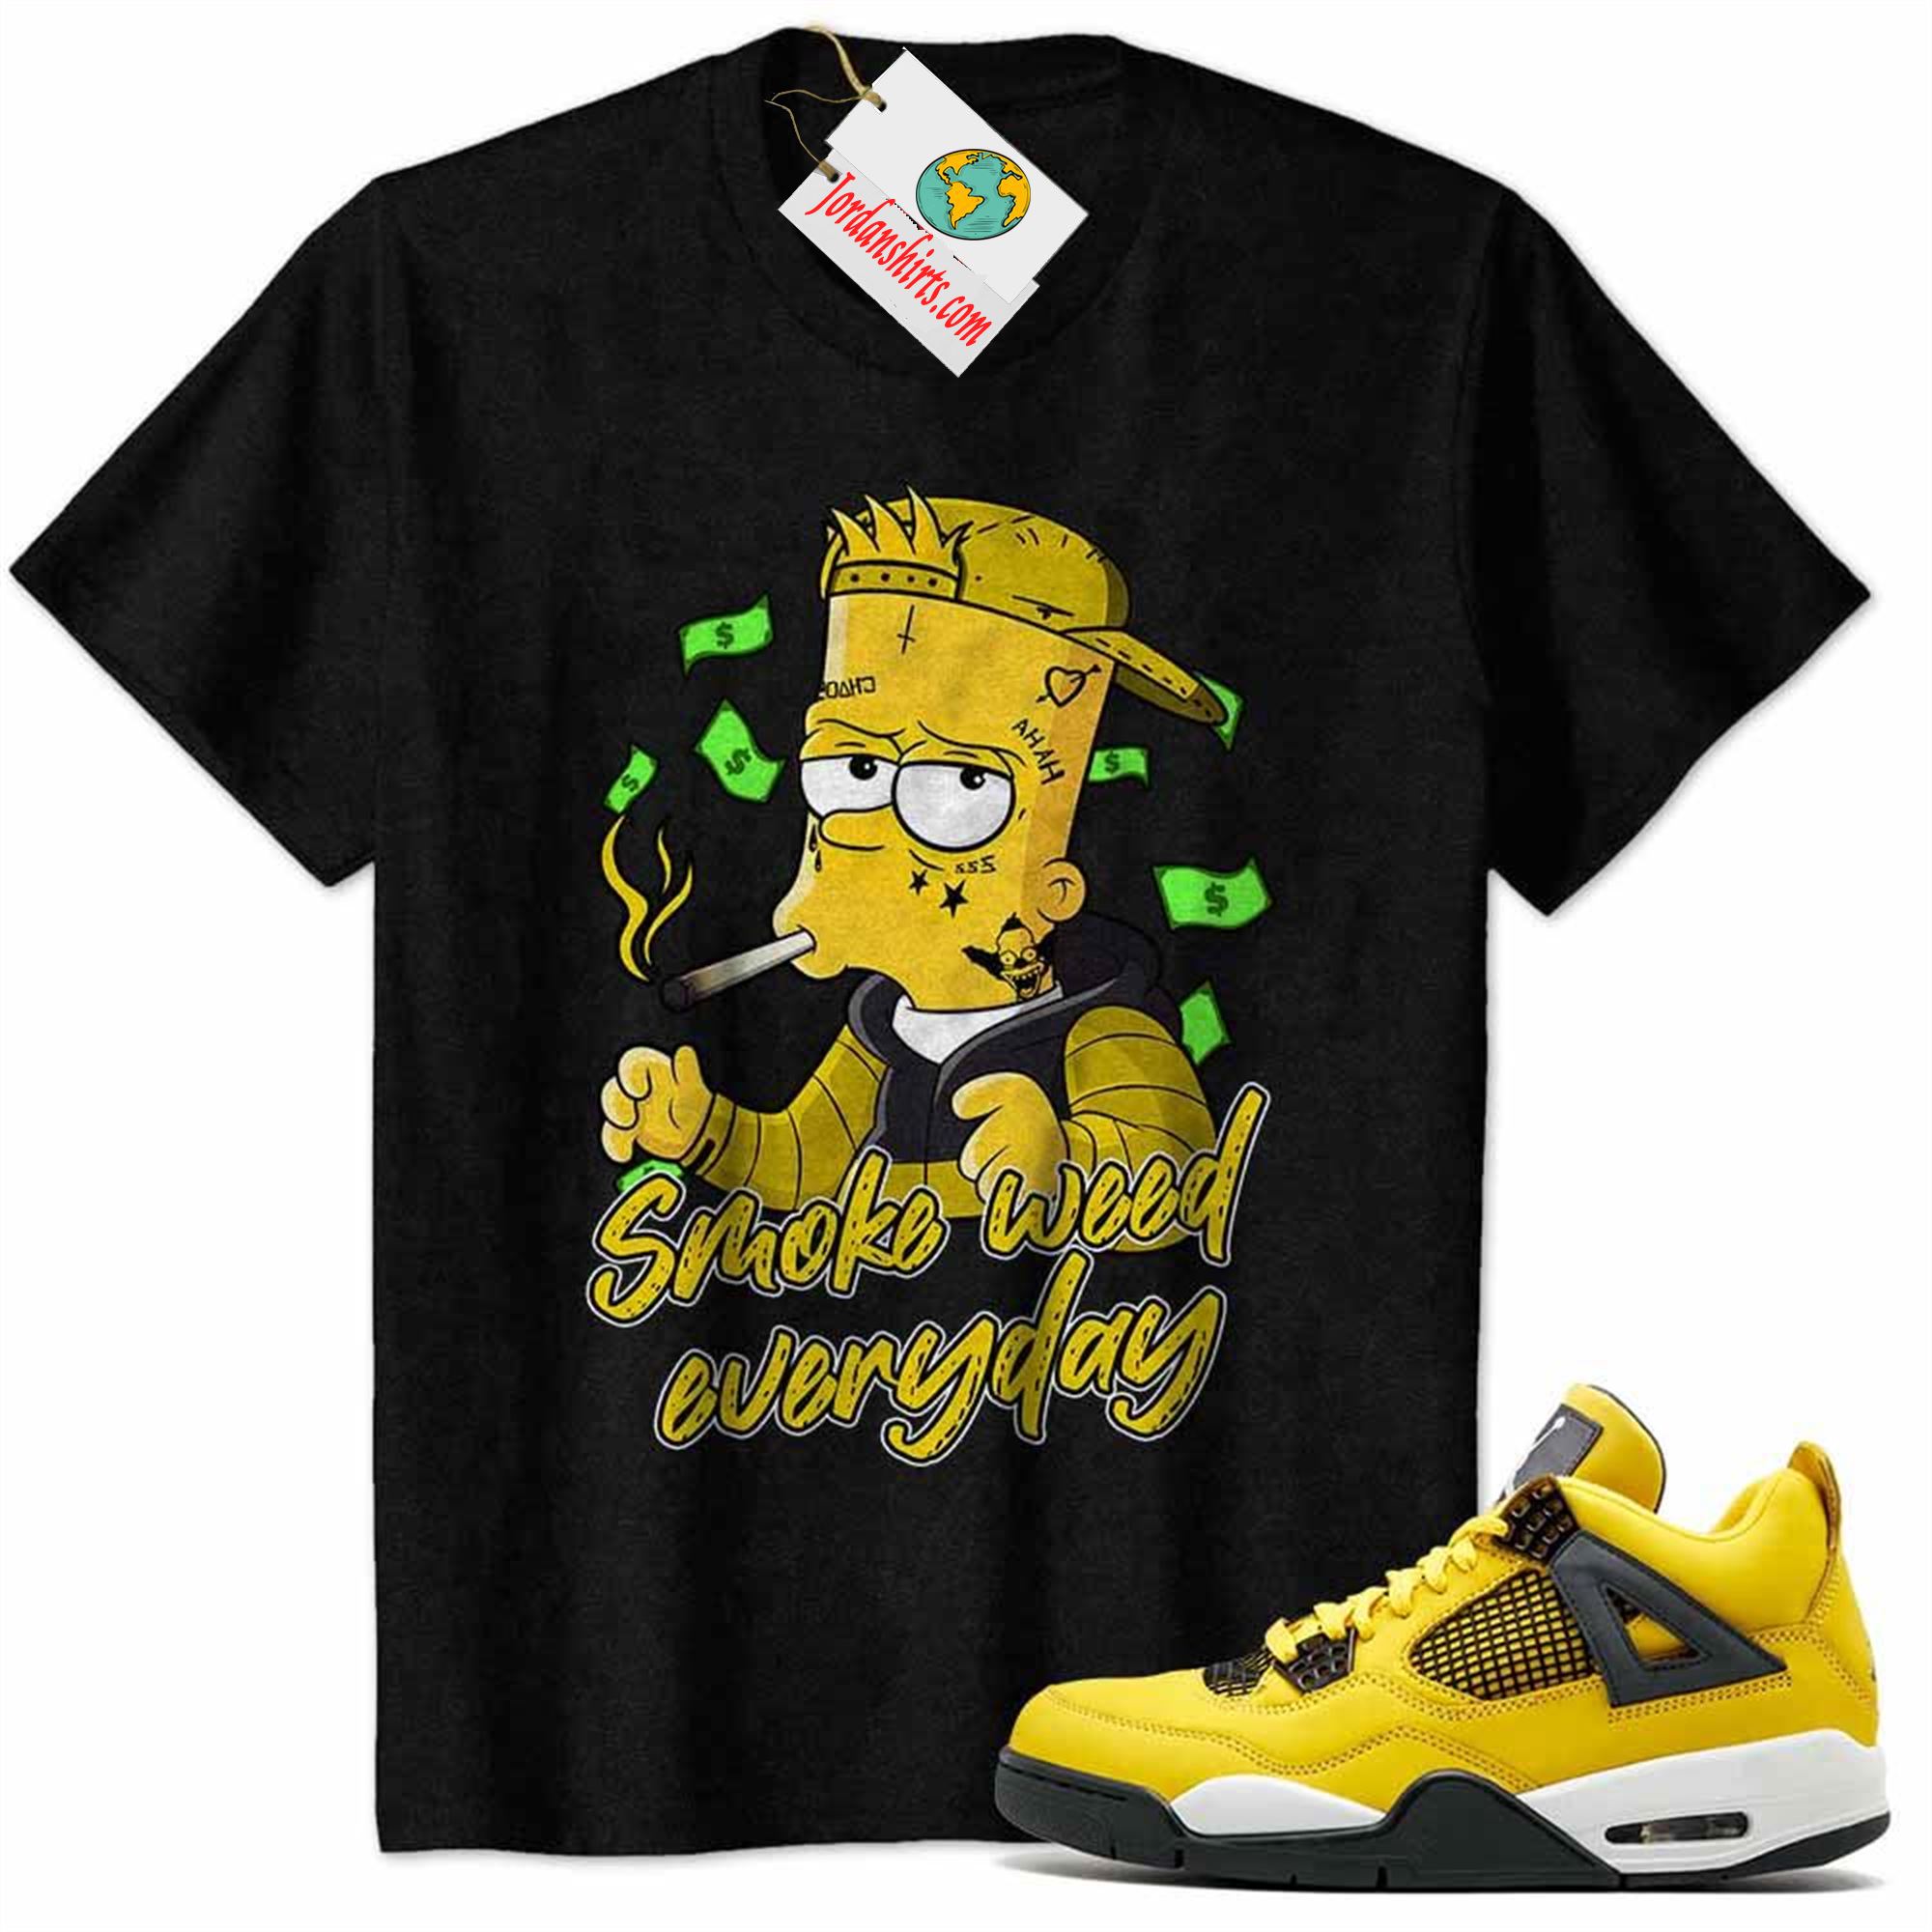 Jordan 4 Shirt, Bart Simpson Smoke Weed Everyday Black Air Jordan 4 Tour Yellow Lightning 4s Plus Size Up To 5xl